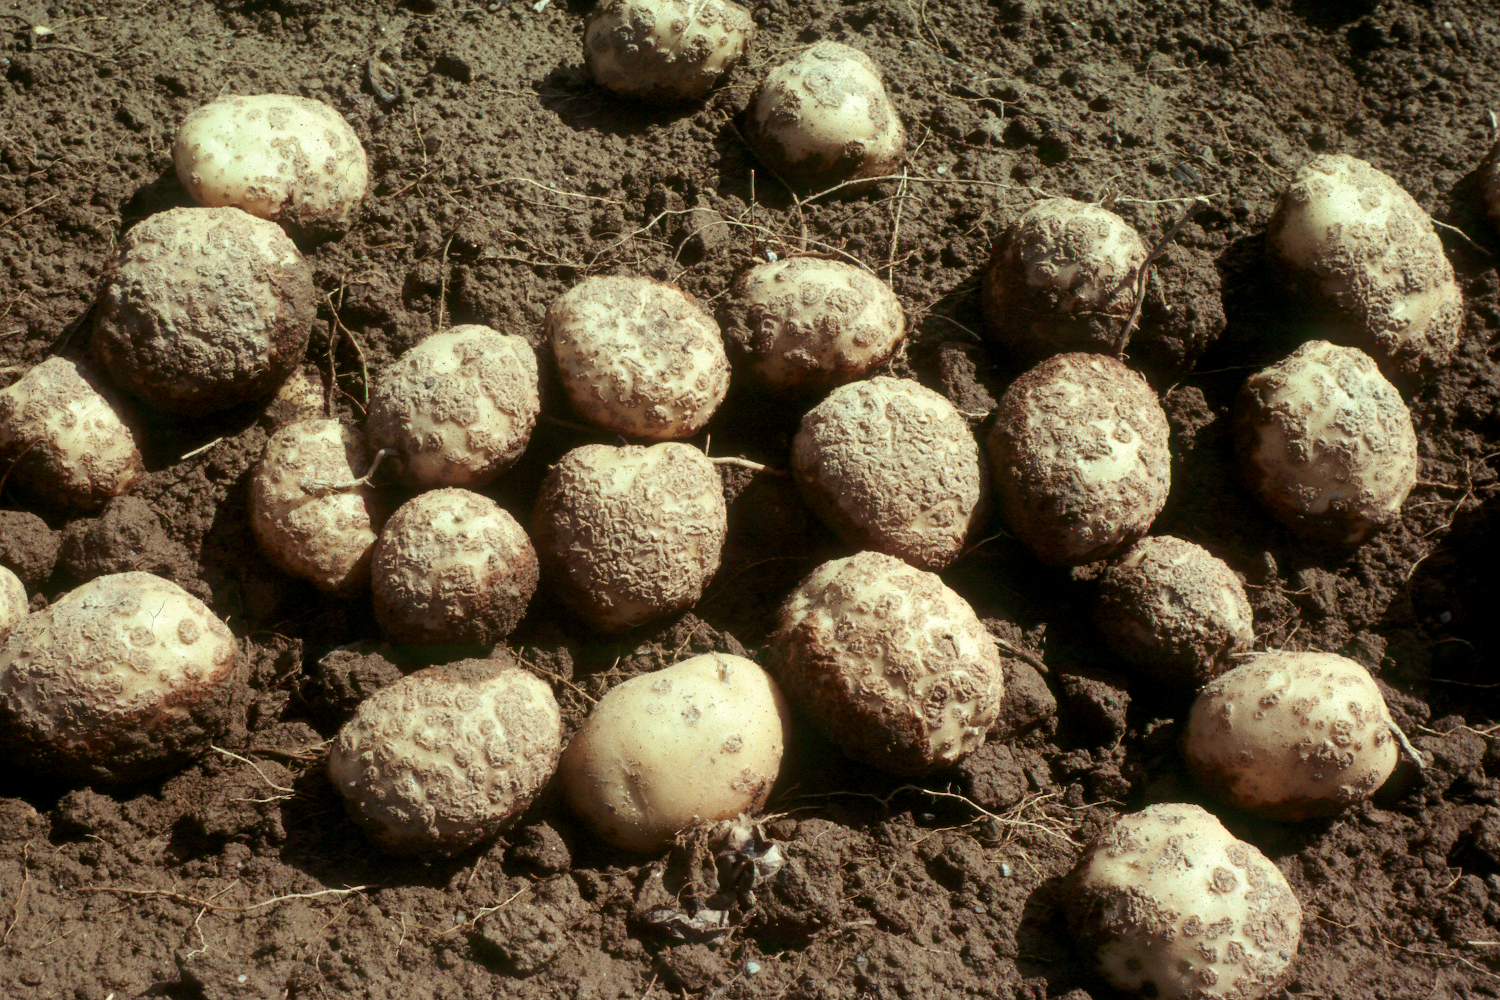 Common scab on potatoes